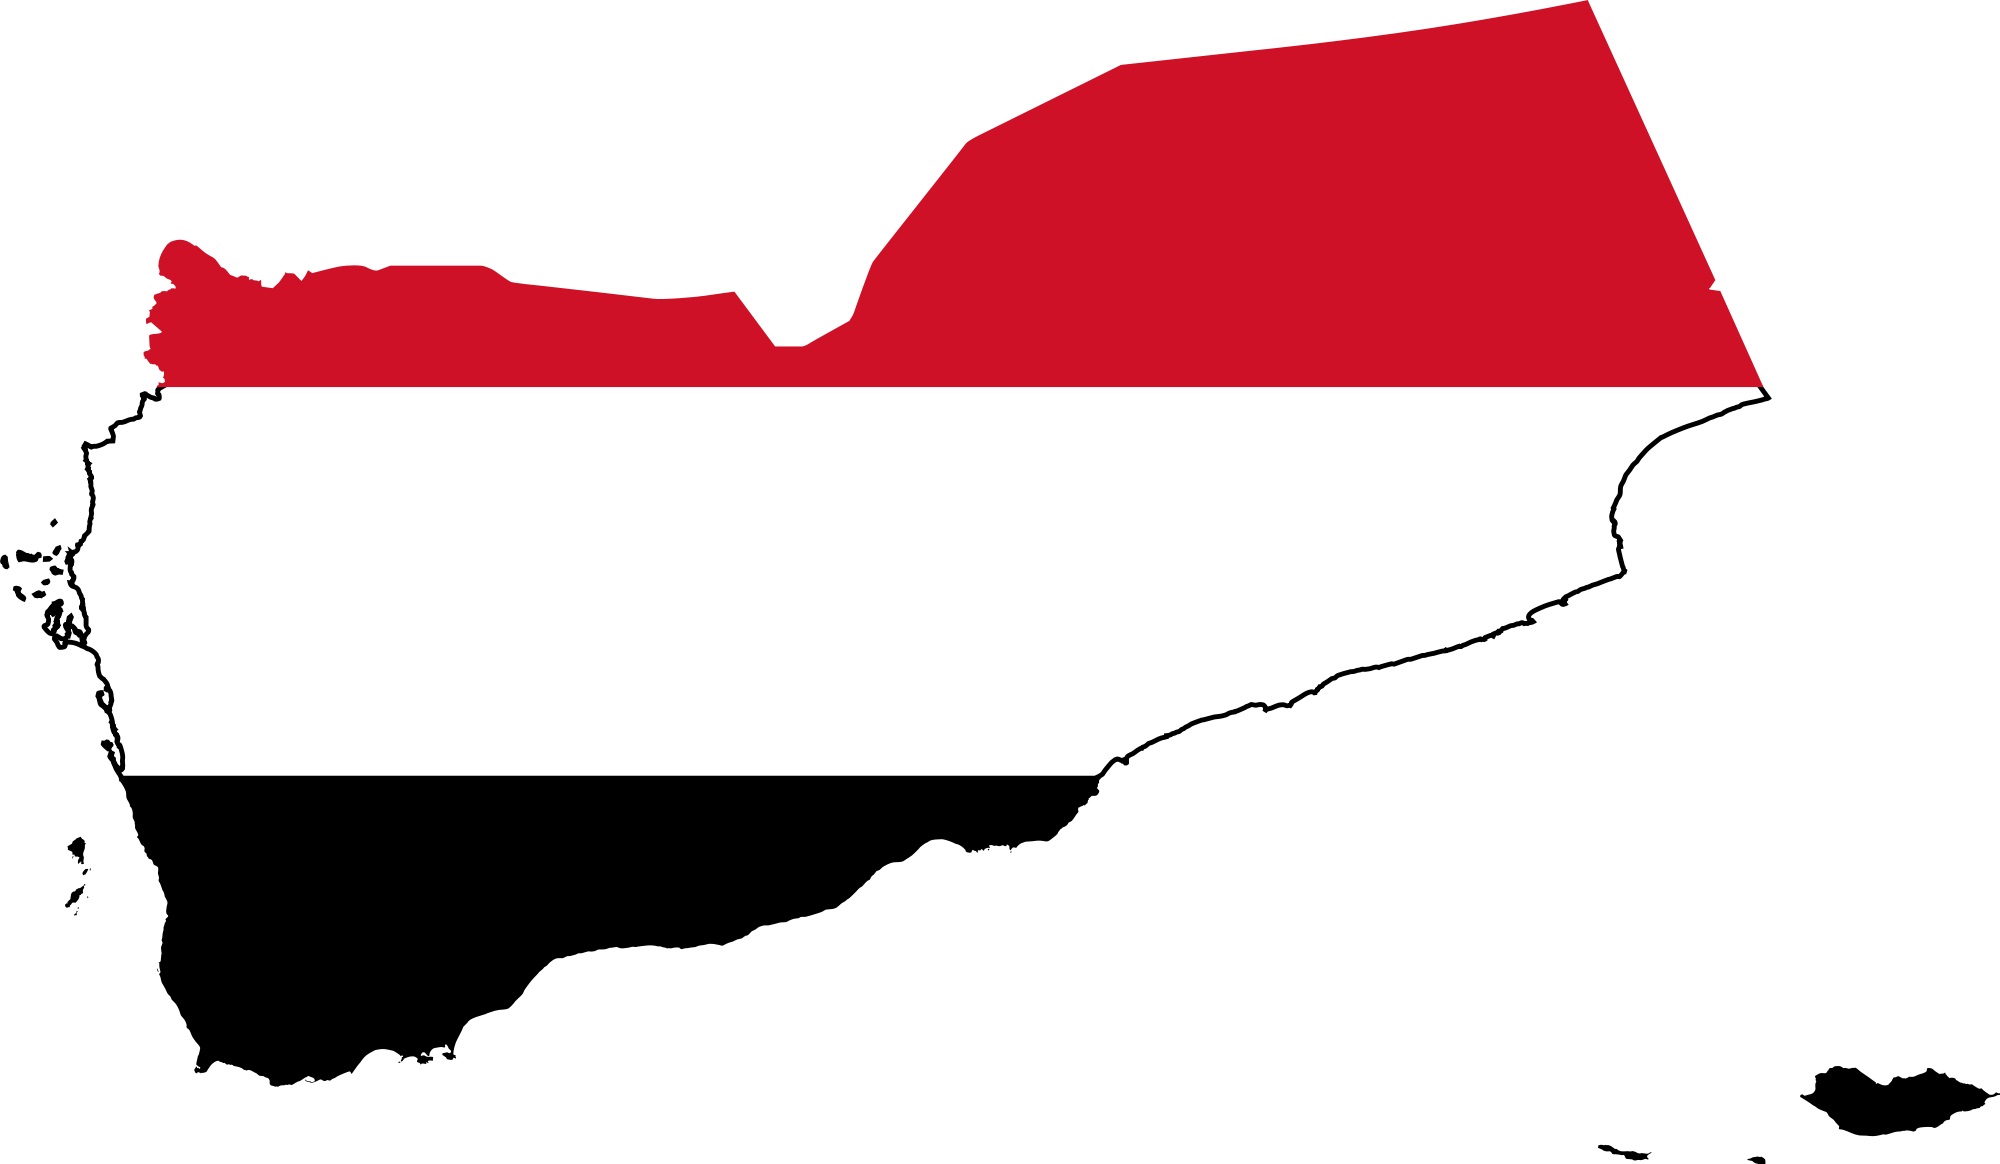 شكر وعرفان لقائد المقاومة السيد حسن نصر الله من قيادات الأحزاب والتنظيمات اليمنية